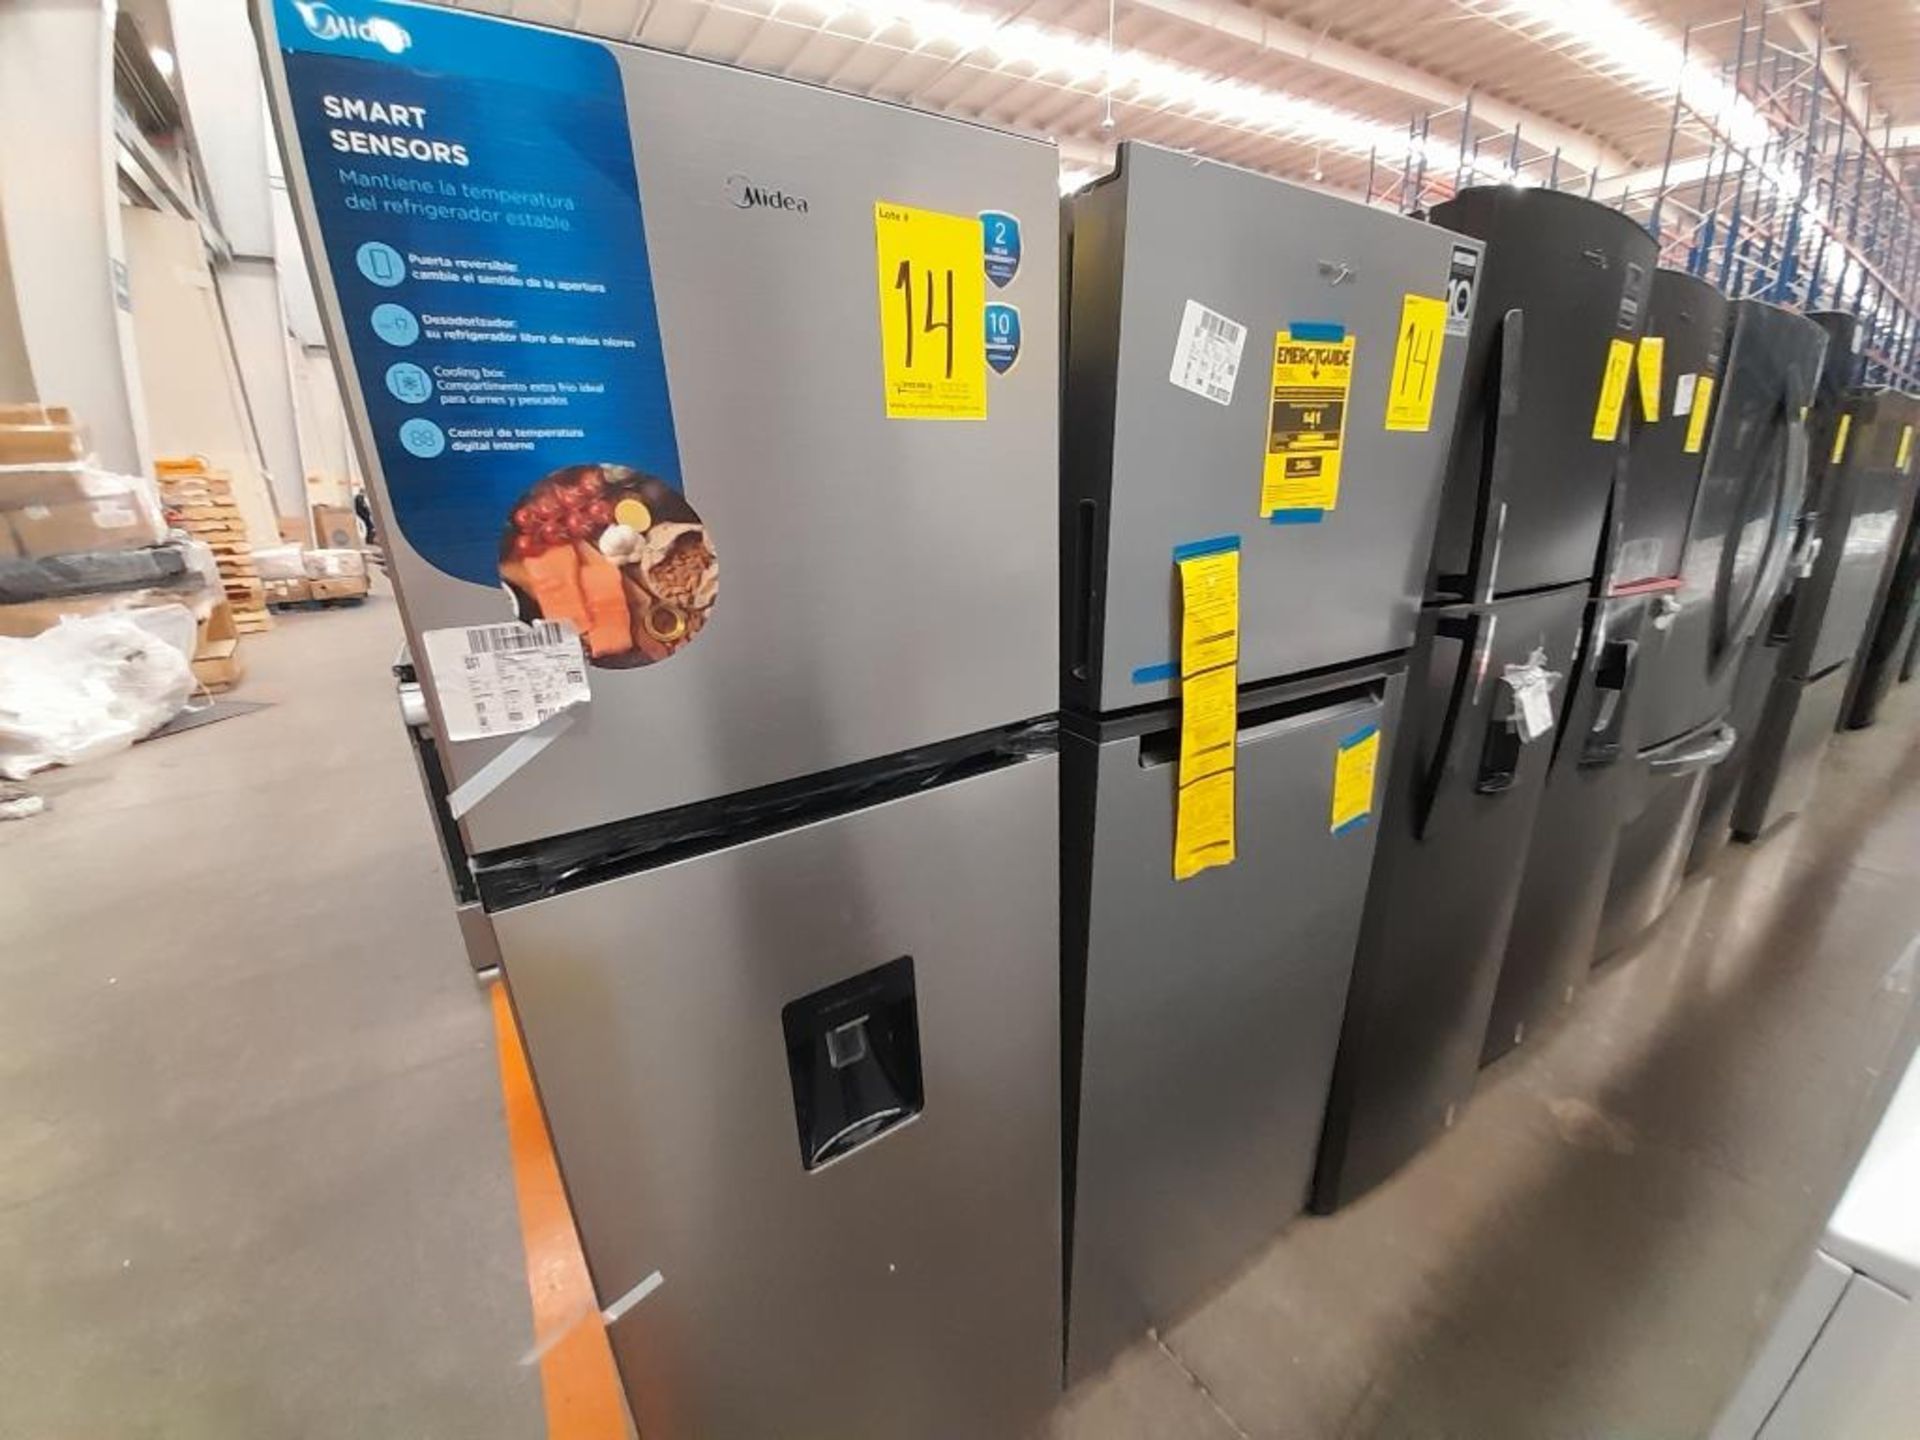 Lote de 2 refrigeradores contiene: 1 Refrigerador Marca WHIRLPOOL, Modelo WT1130M, Serie ND, Color - Image 2 of 8